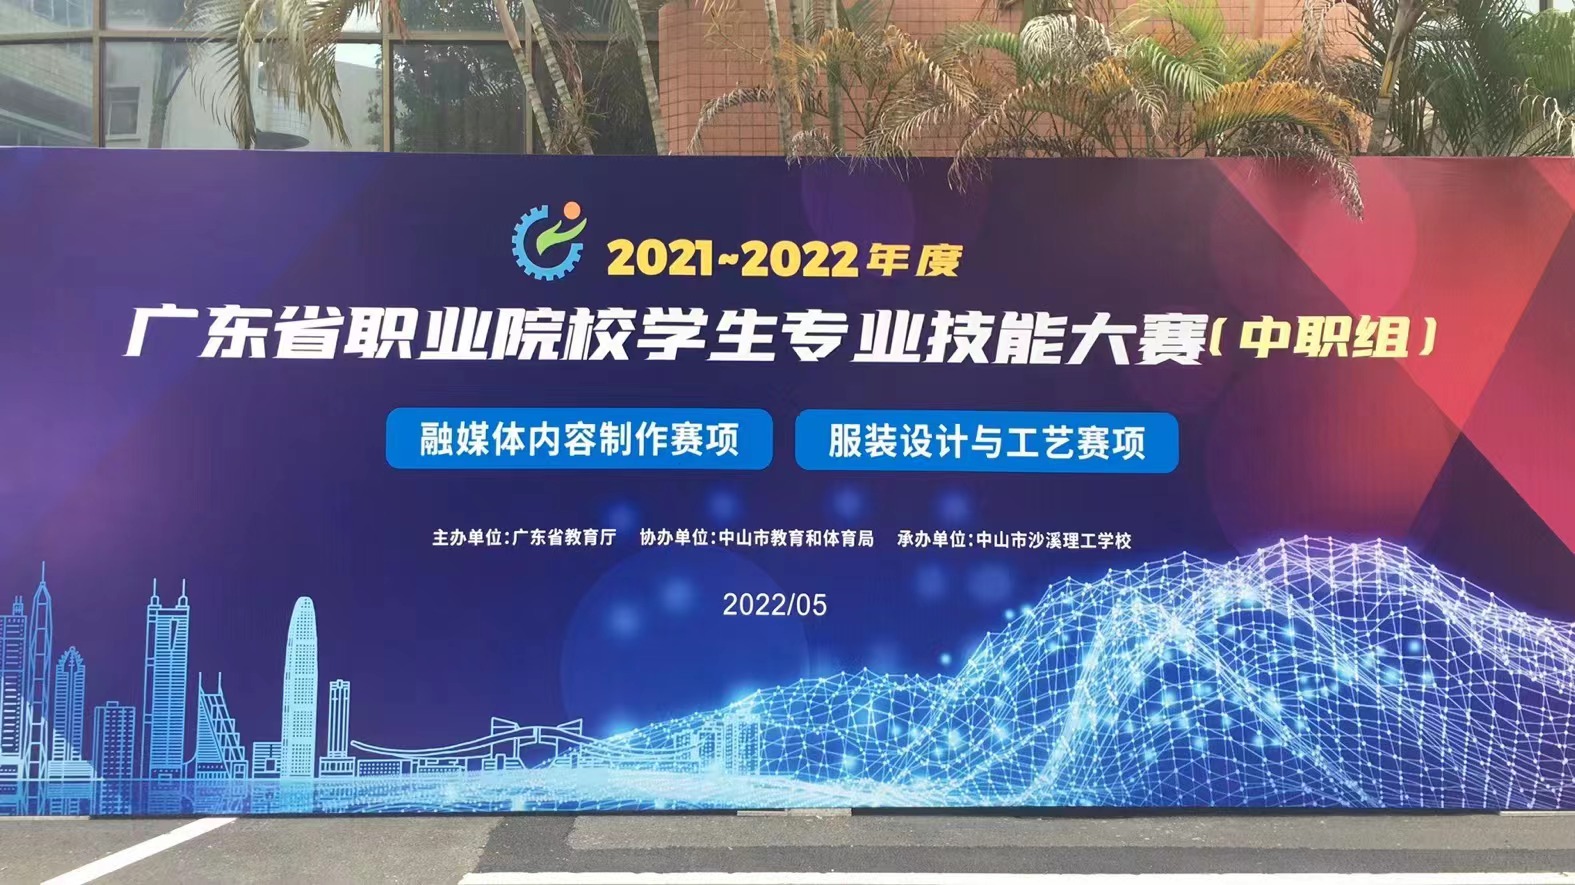 2021-2022年度广东省职业院校学生技能大赛（中职组）融媒体内容制作赛项圆满举行